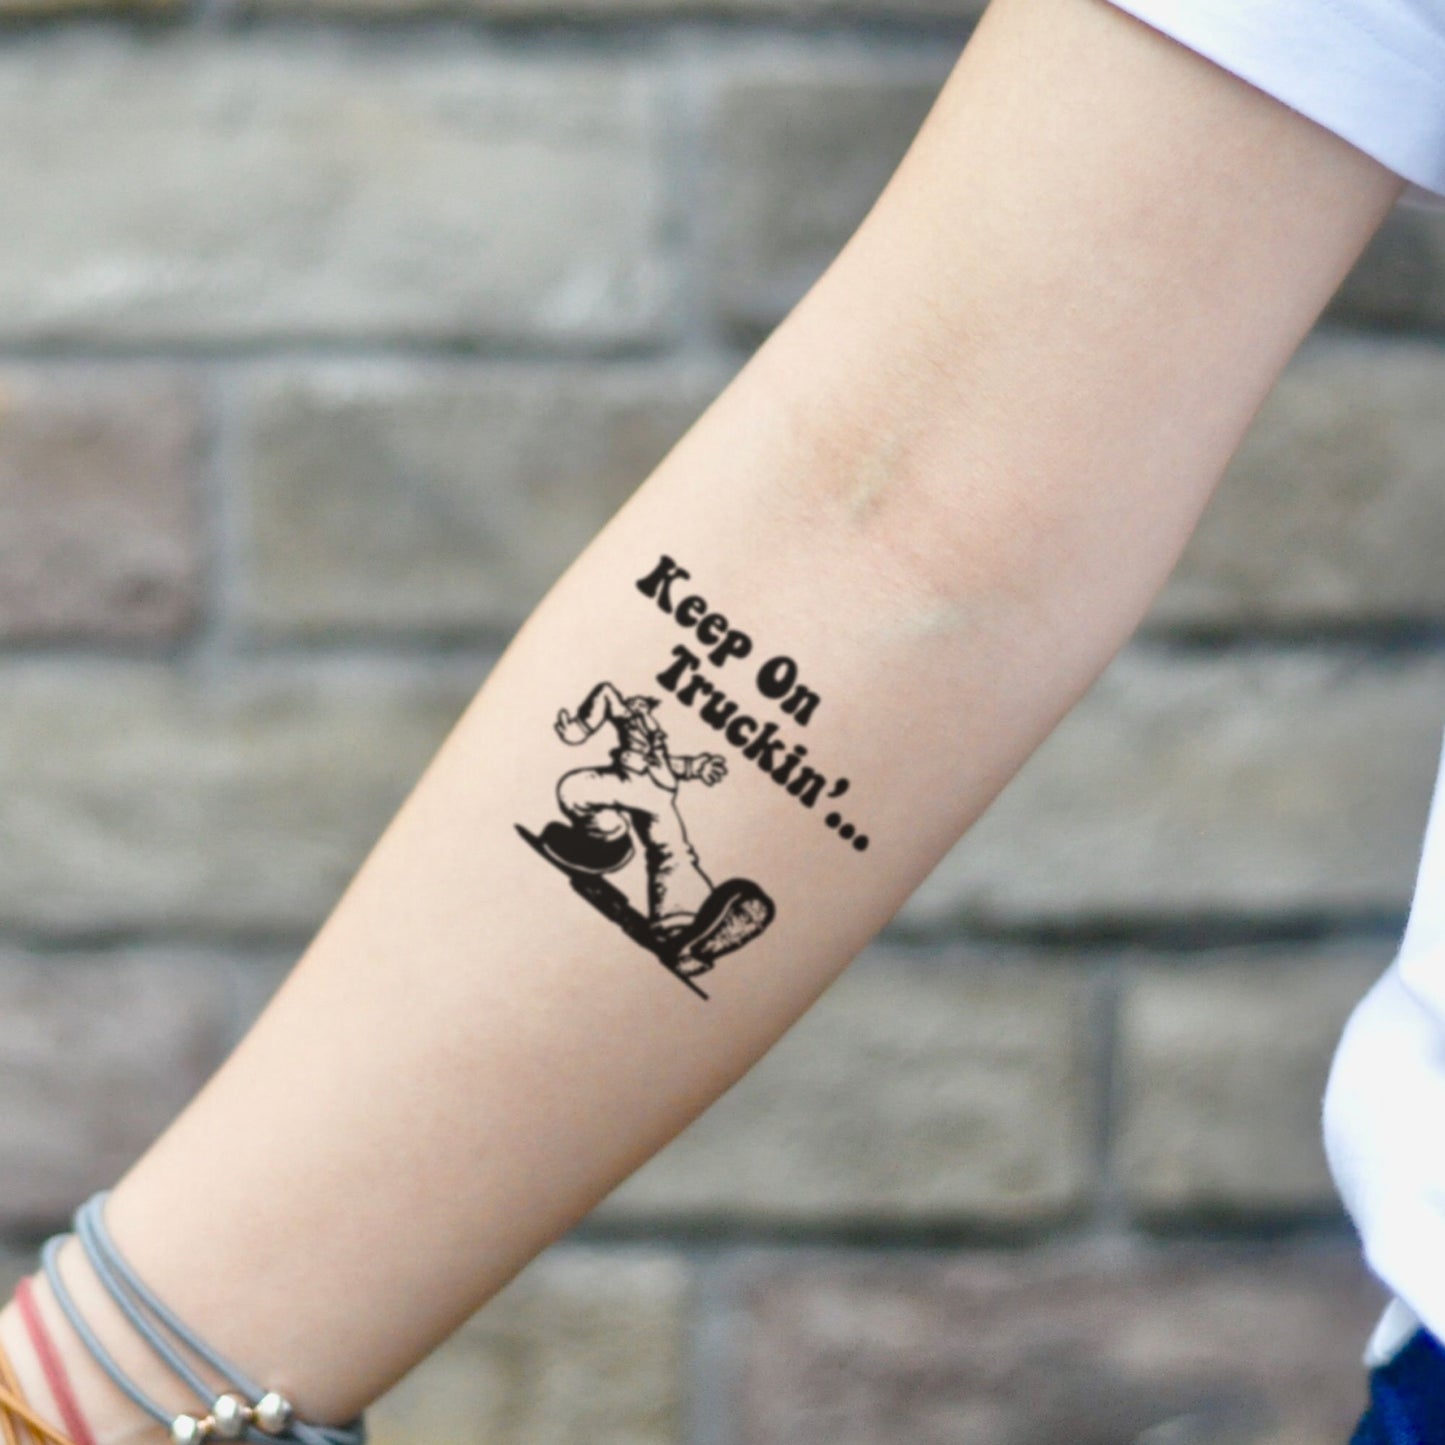 fake small keep on truckin cartoon temporary tattoo sticker design idea on inner arm